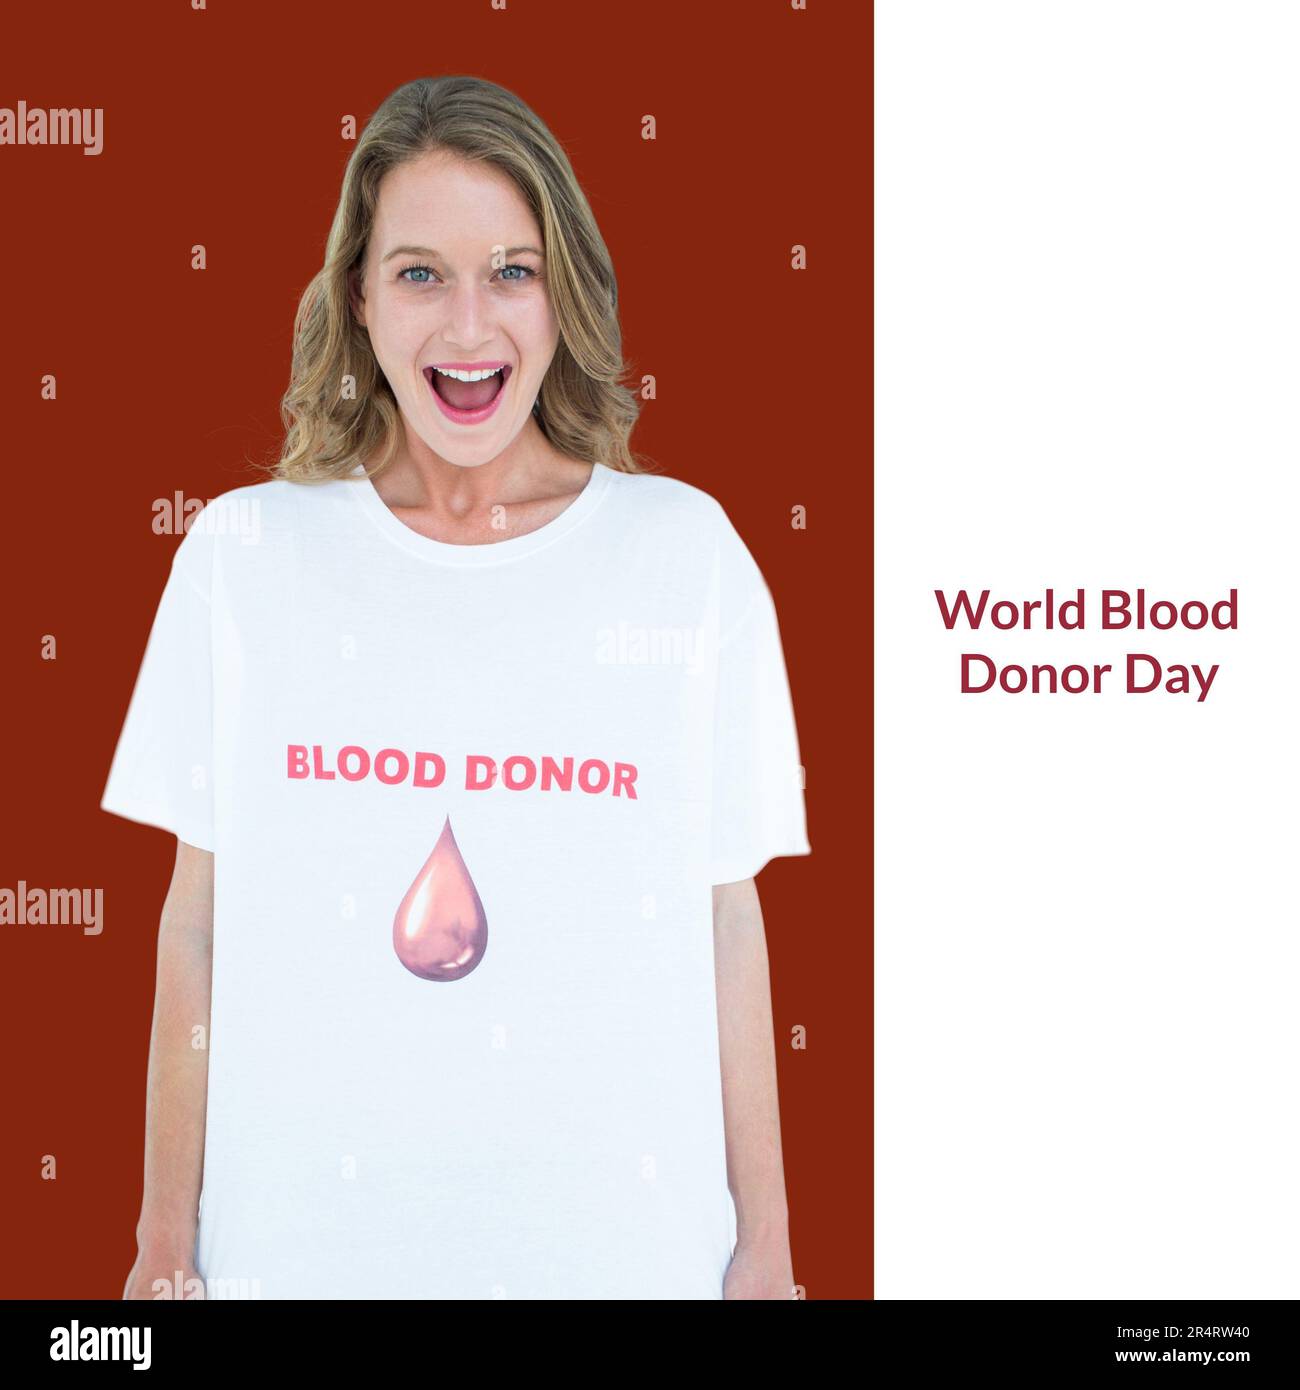 Composición del texto del día mundial del donante de sangre sobre la mujer caucásica feliz en la camiseta del donante de sangre Foto de stock